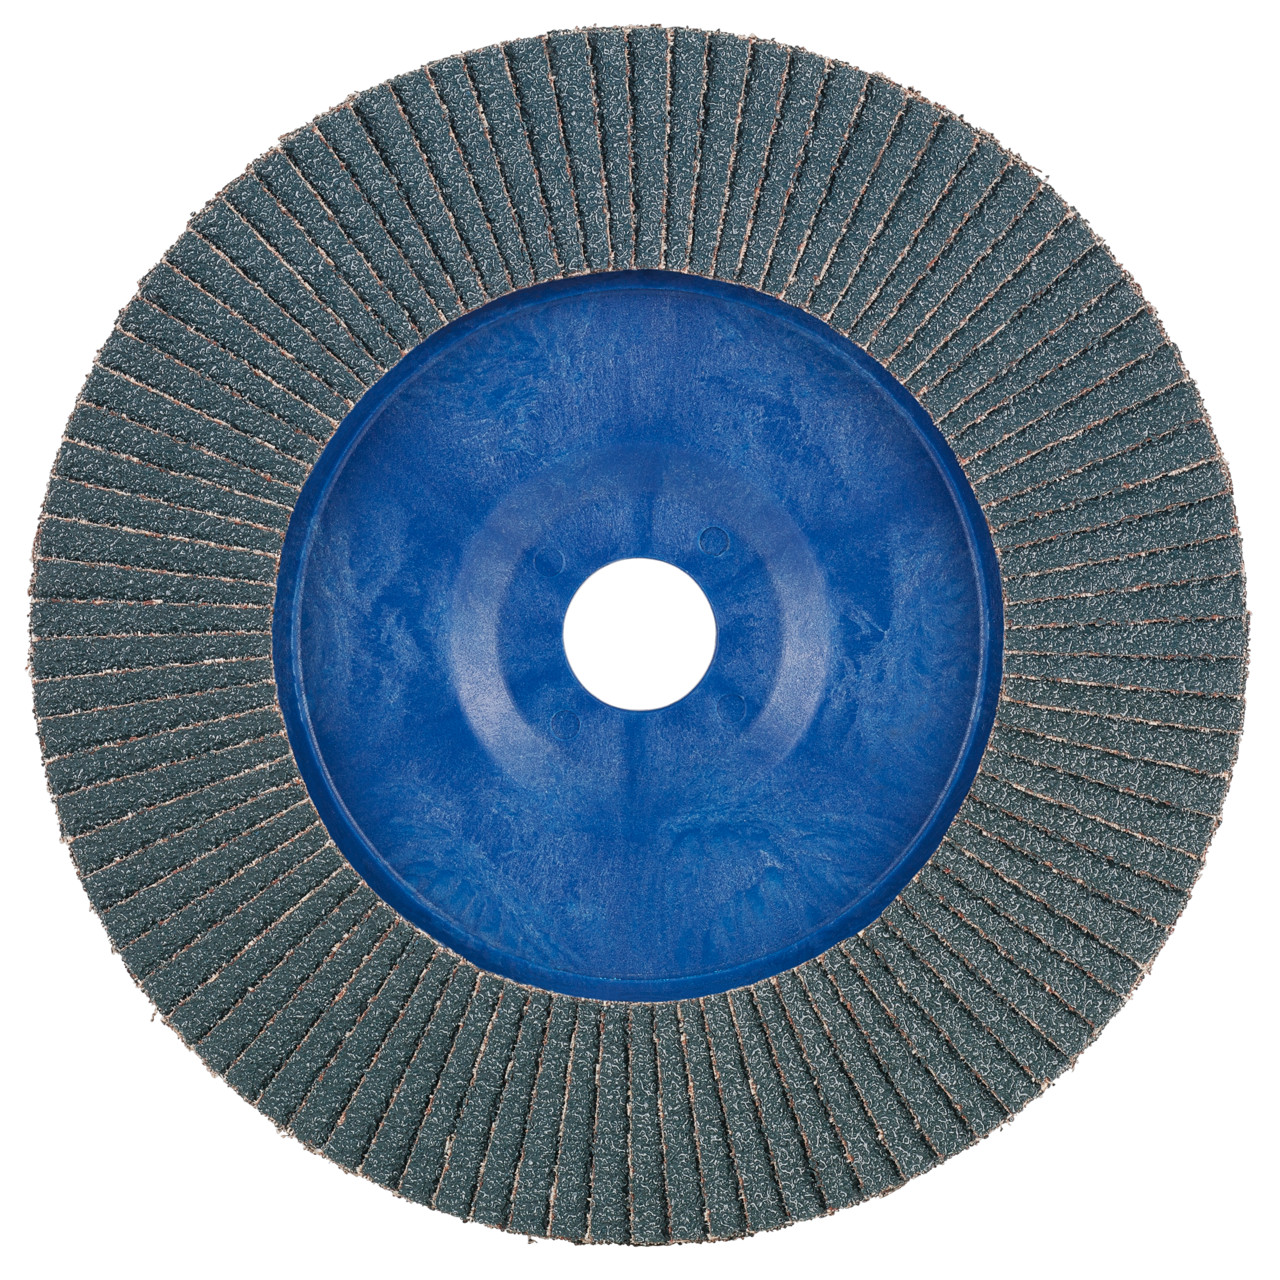 Rondella dentata Tyrolit DxH 178x22.2 2in1 per acciaio e acciaio inox, P40, forma: 28N - versione diritta (corpo portante in plastica), Art. 847923